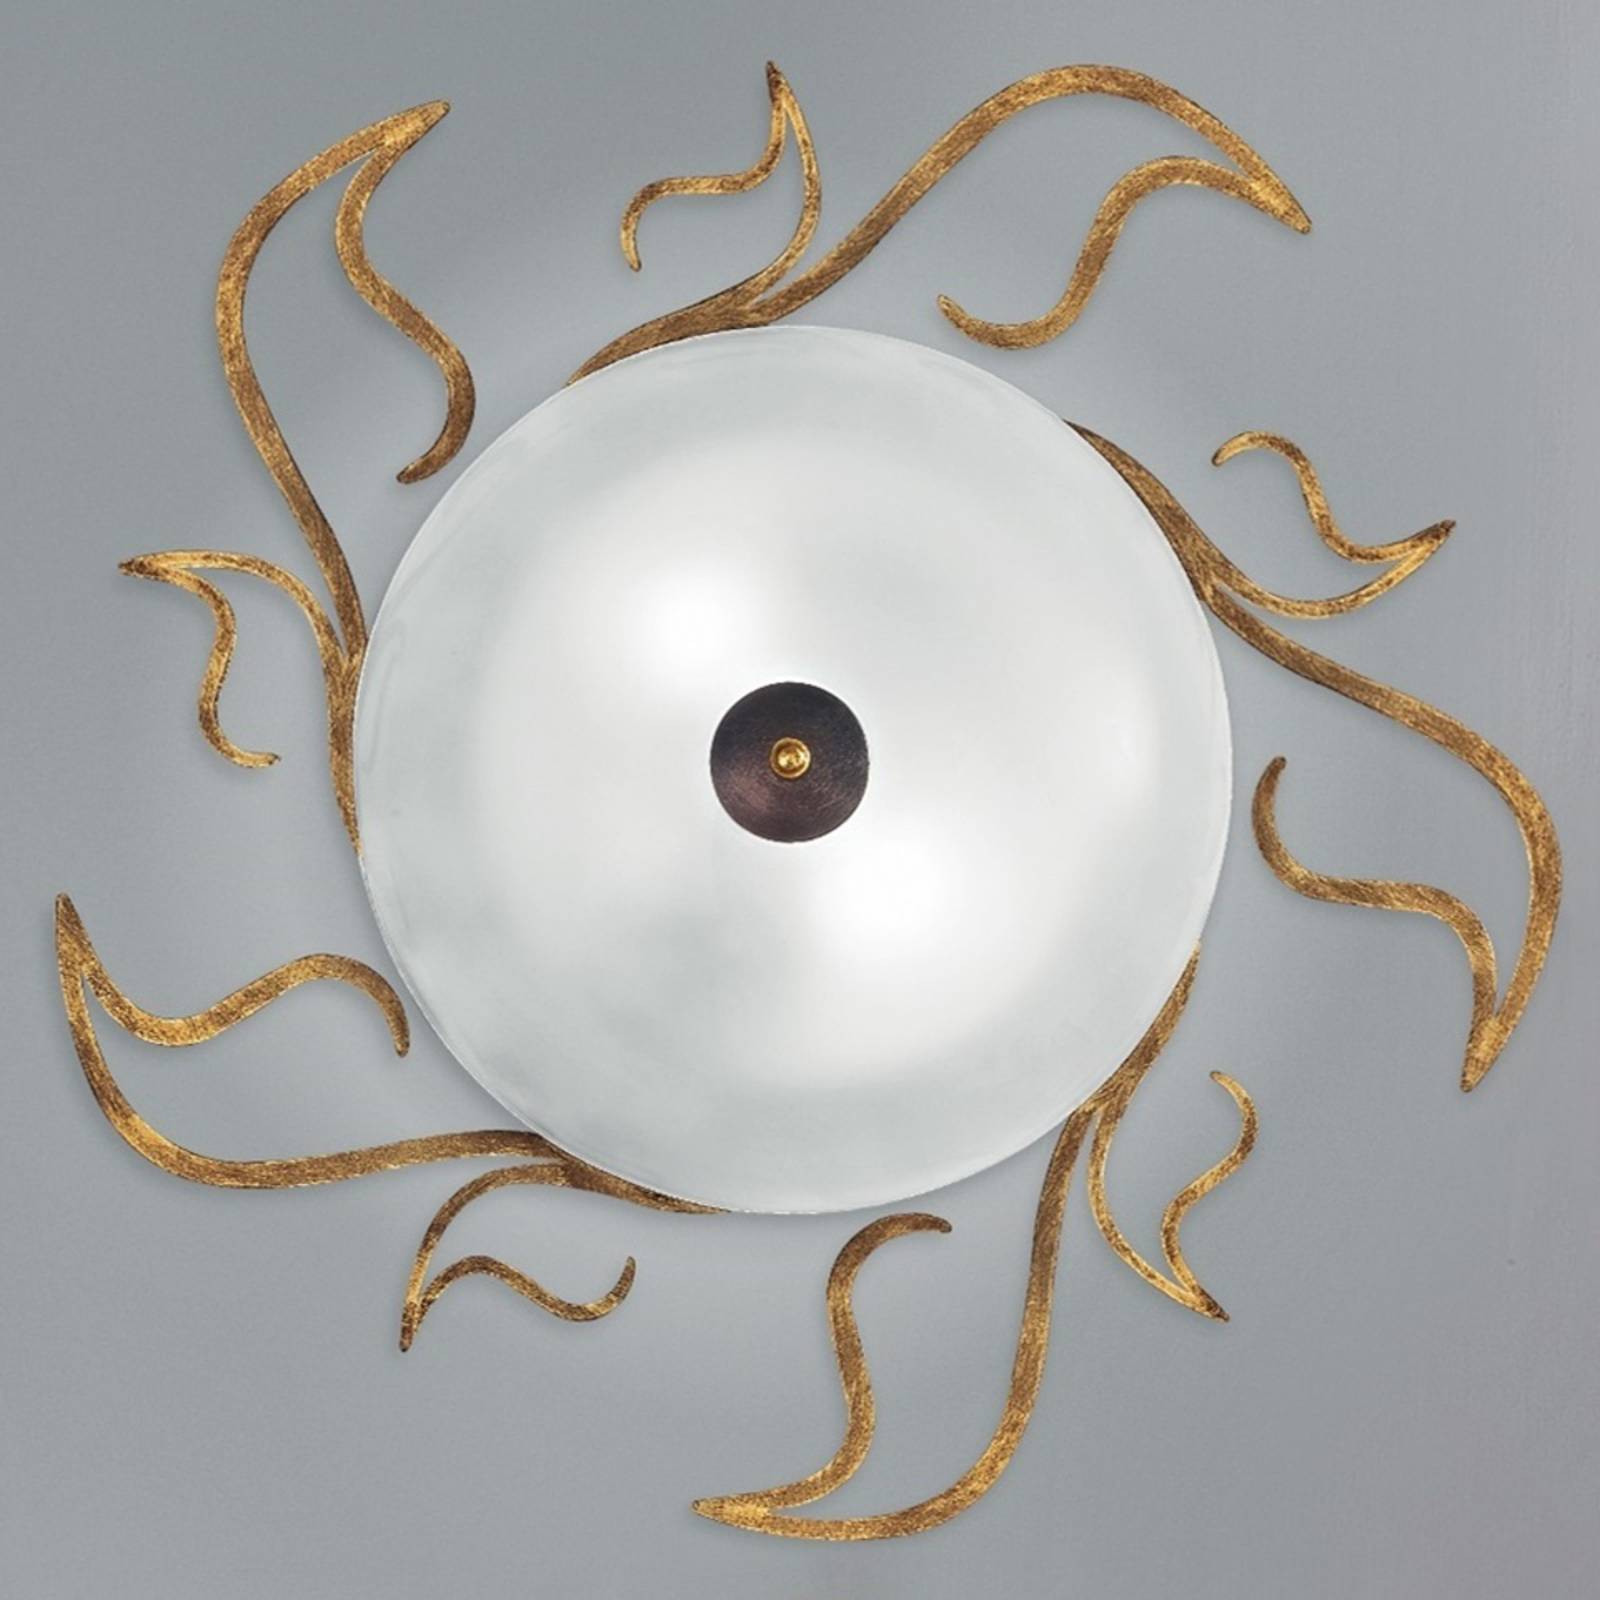 Kögl Deckenlampe Amabile, rost-gold mit Glasschirm